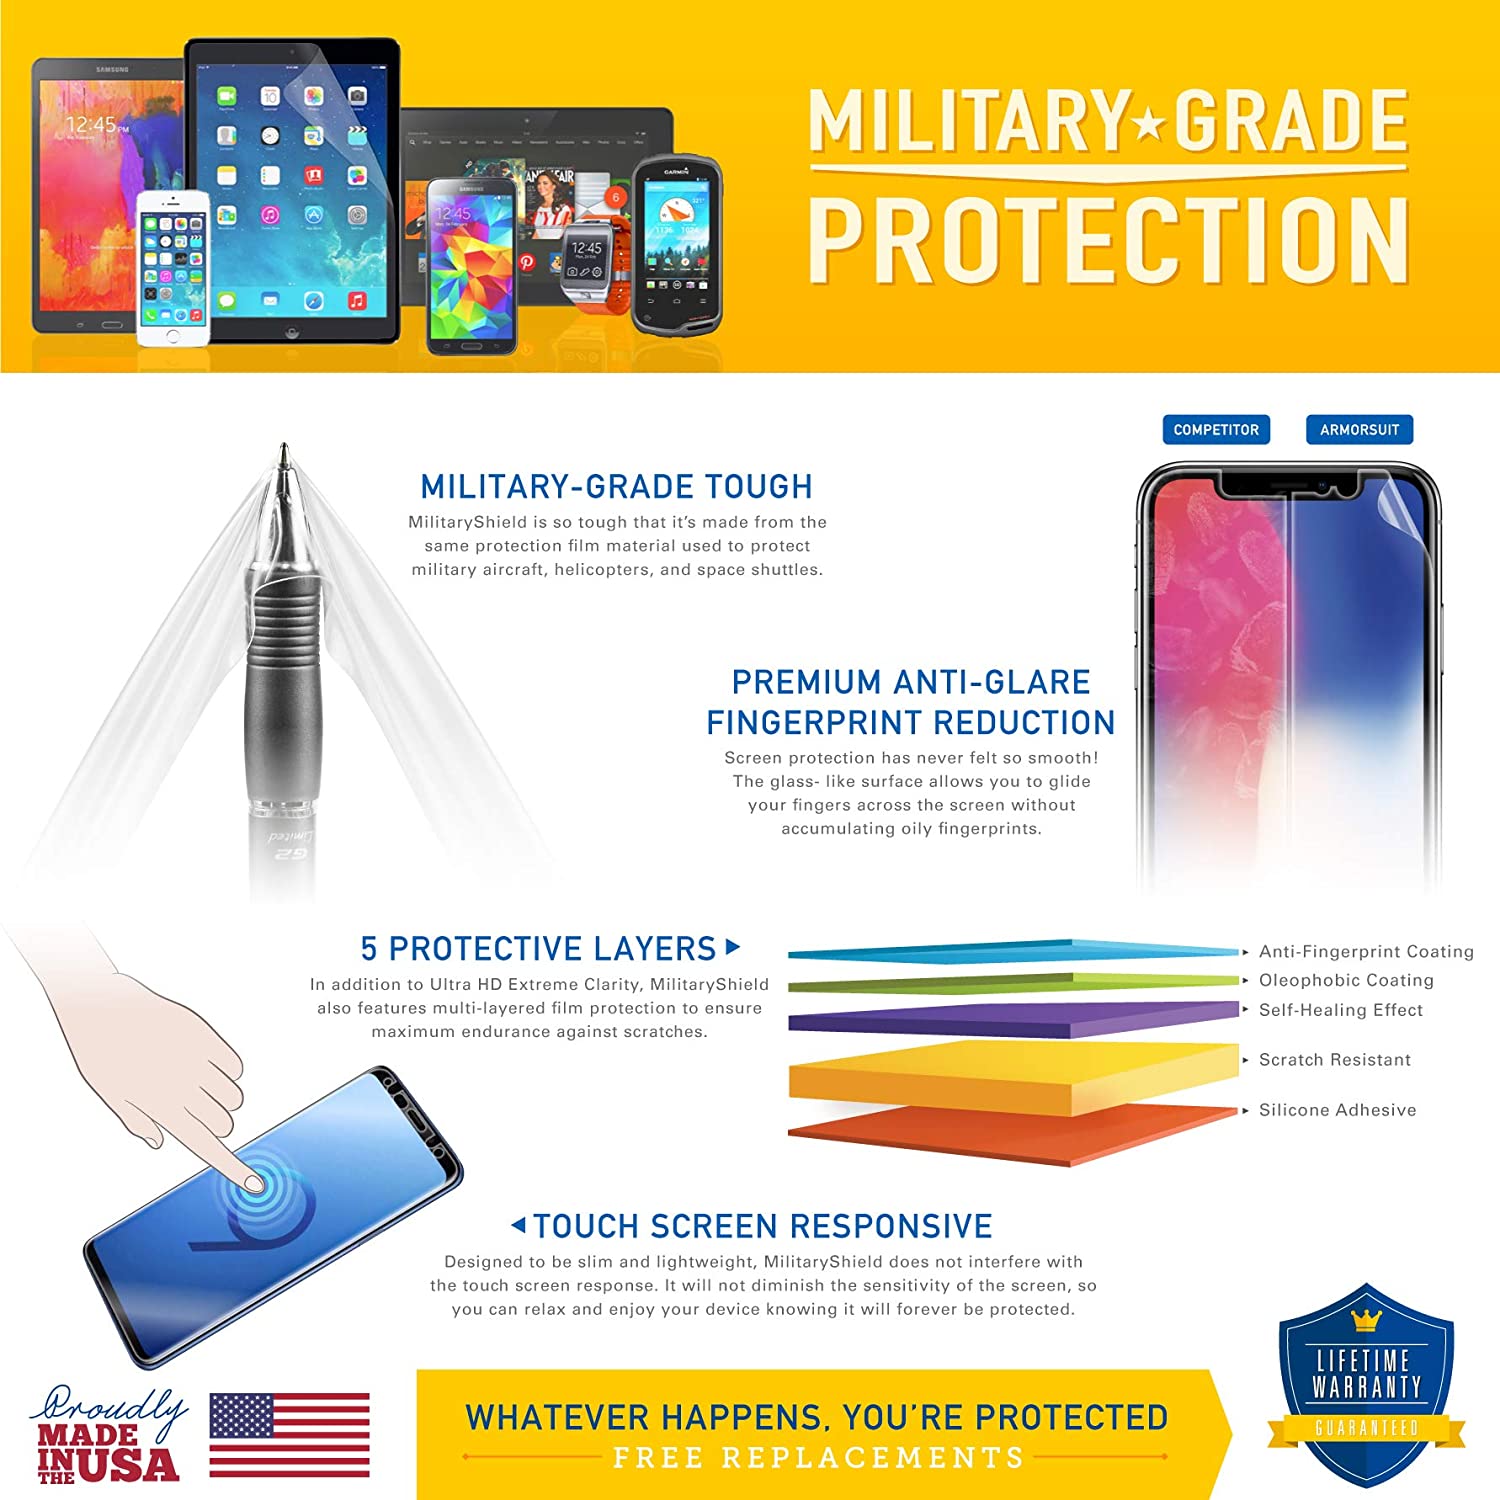 Samsung Galaxy Tab S5e Matte (Anti-Glare) Screen Protector